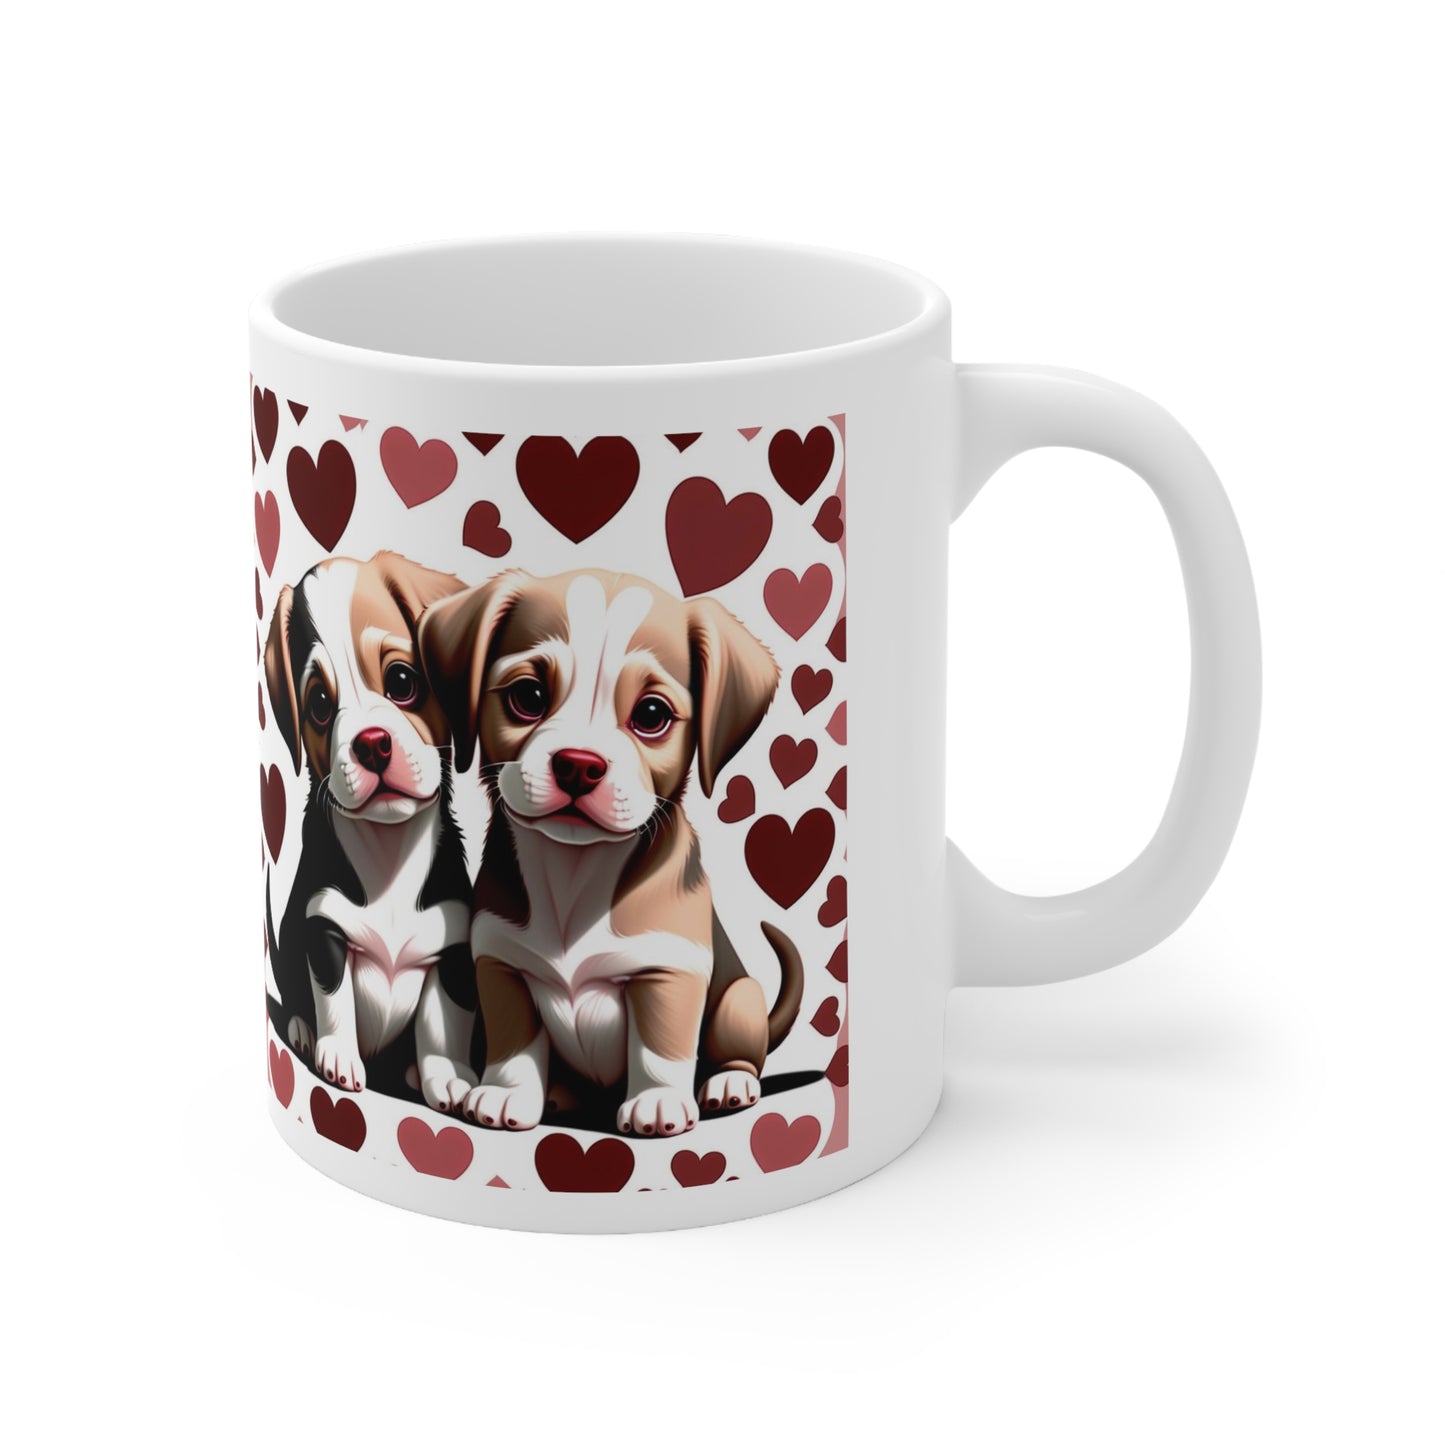 Puppy Love Ceramic Mug 11oz